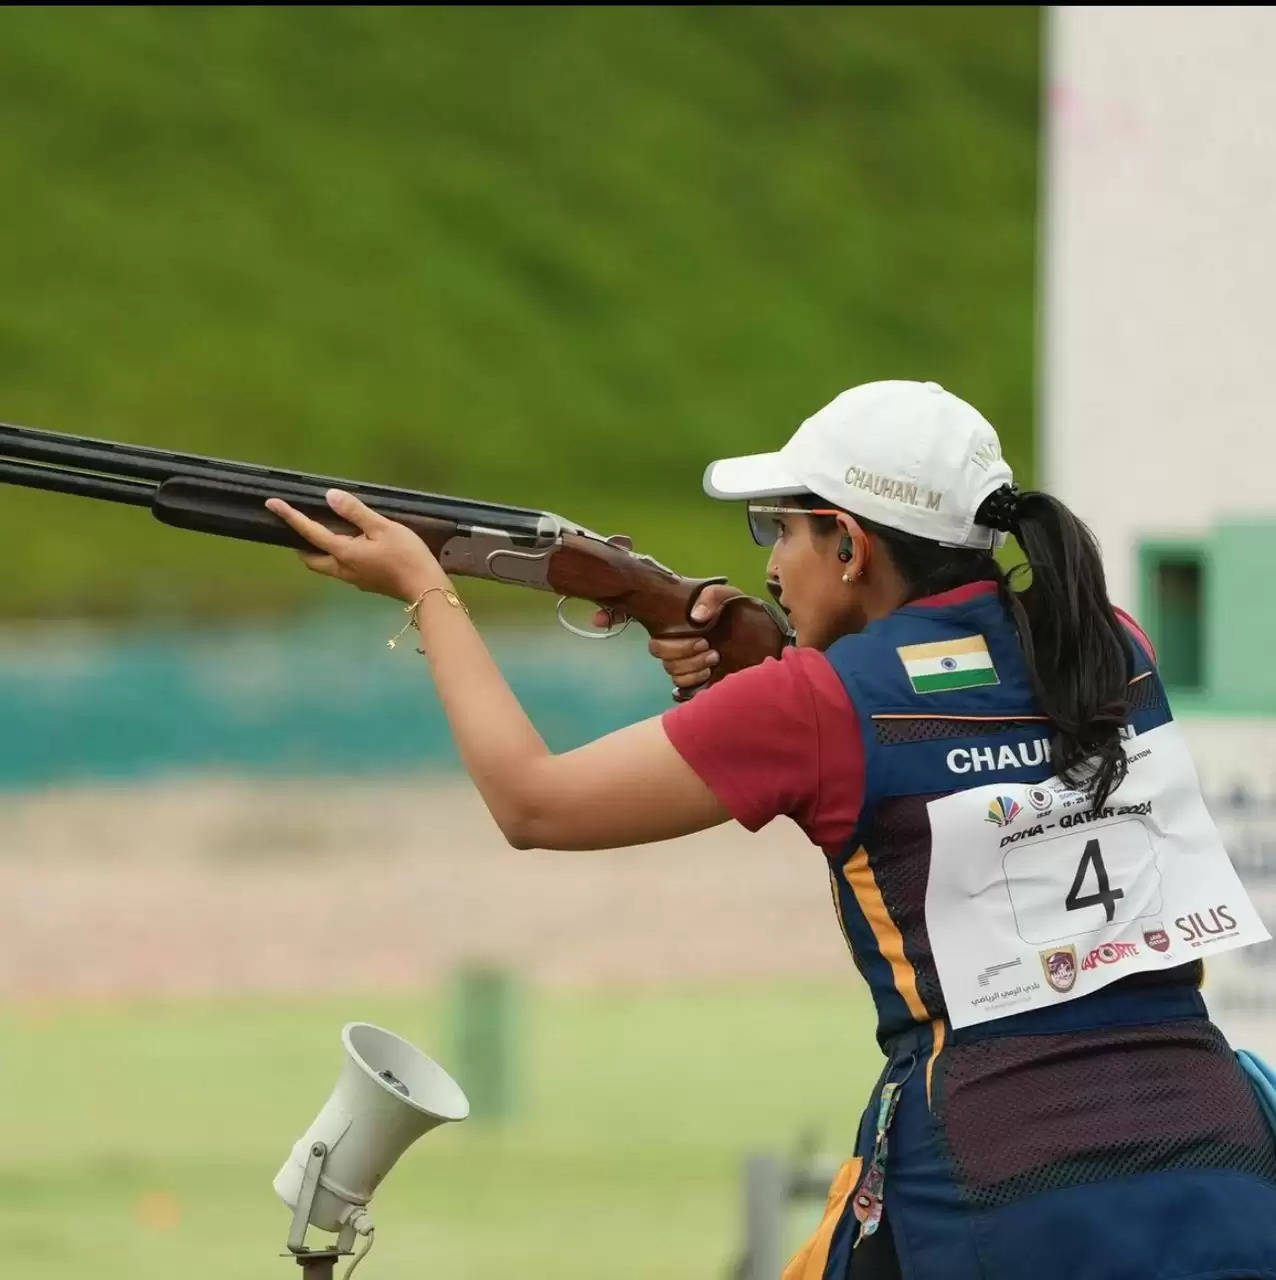 Maheshwari Chauhan of Udaipur will represent India in the Skeet Shotgun event at Paris Olympics